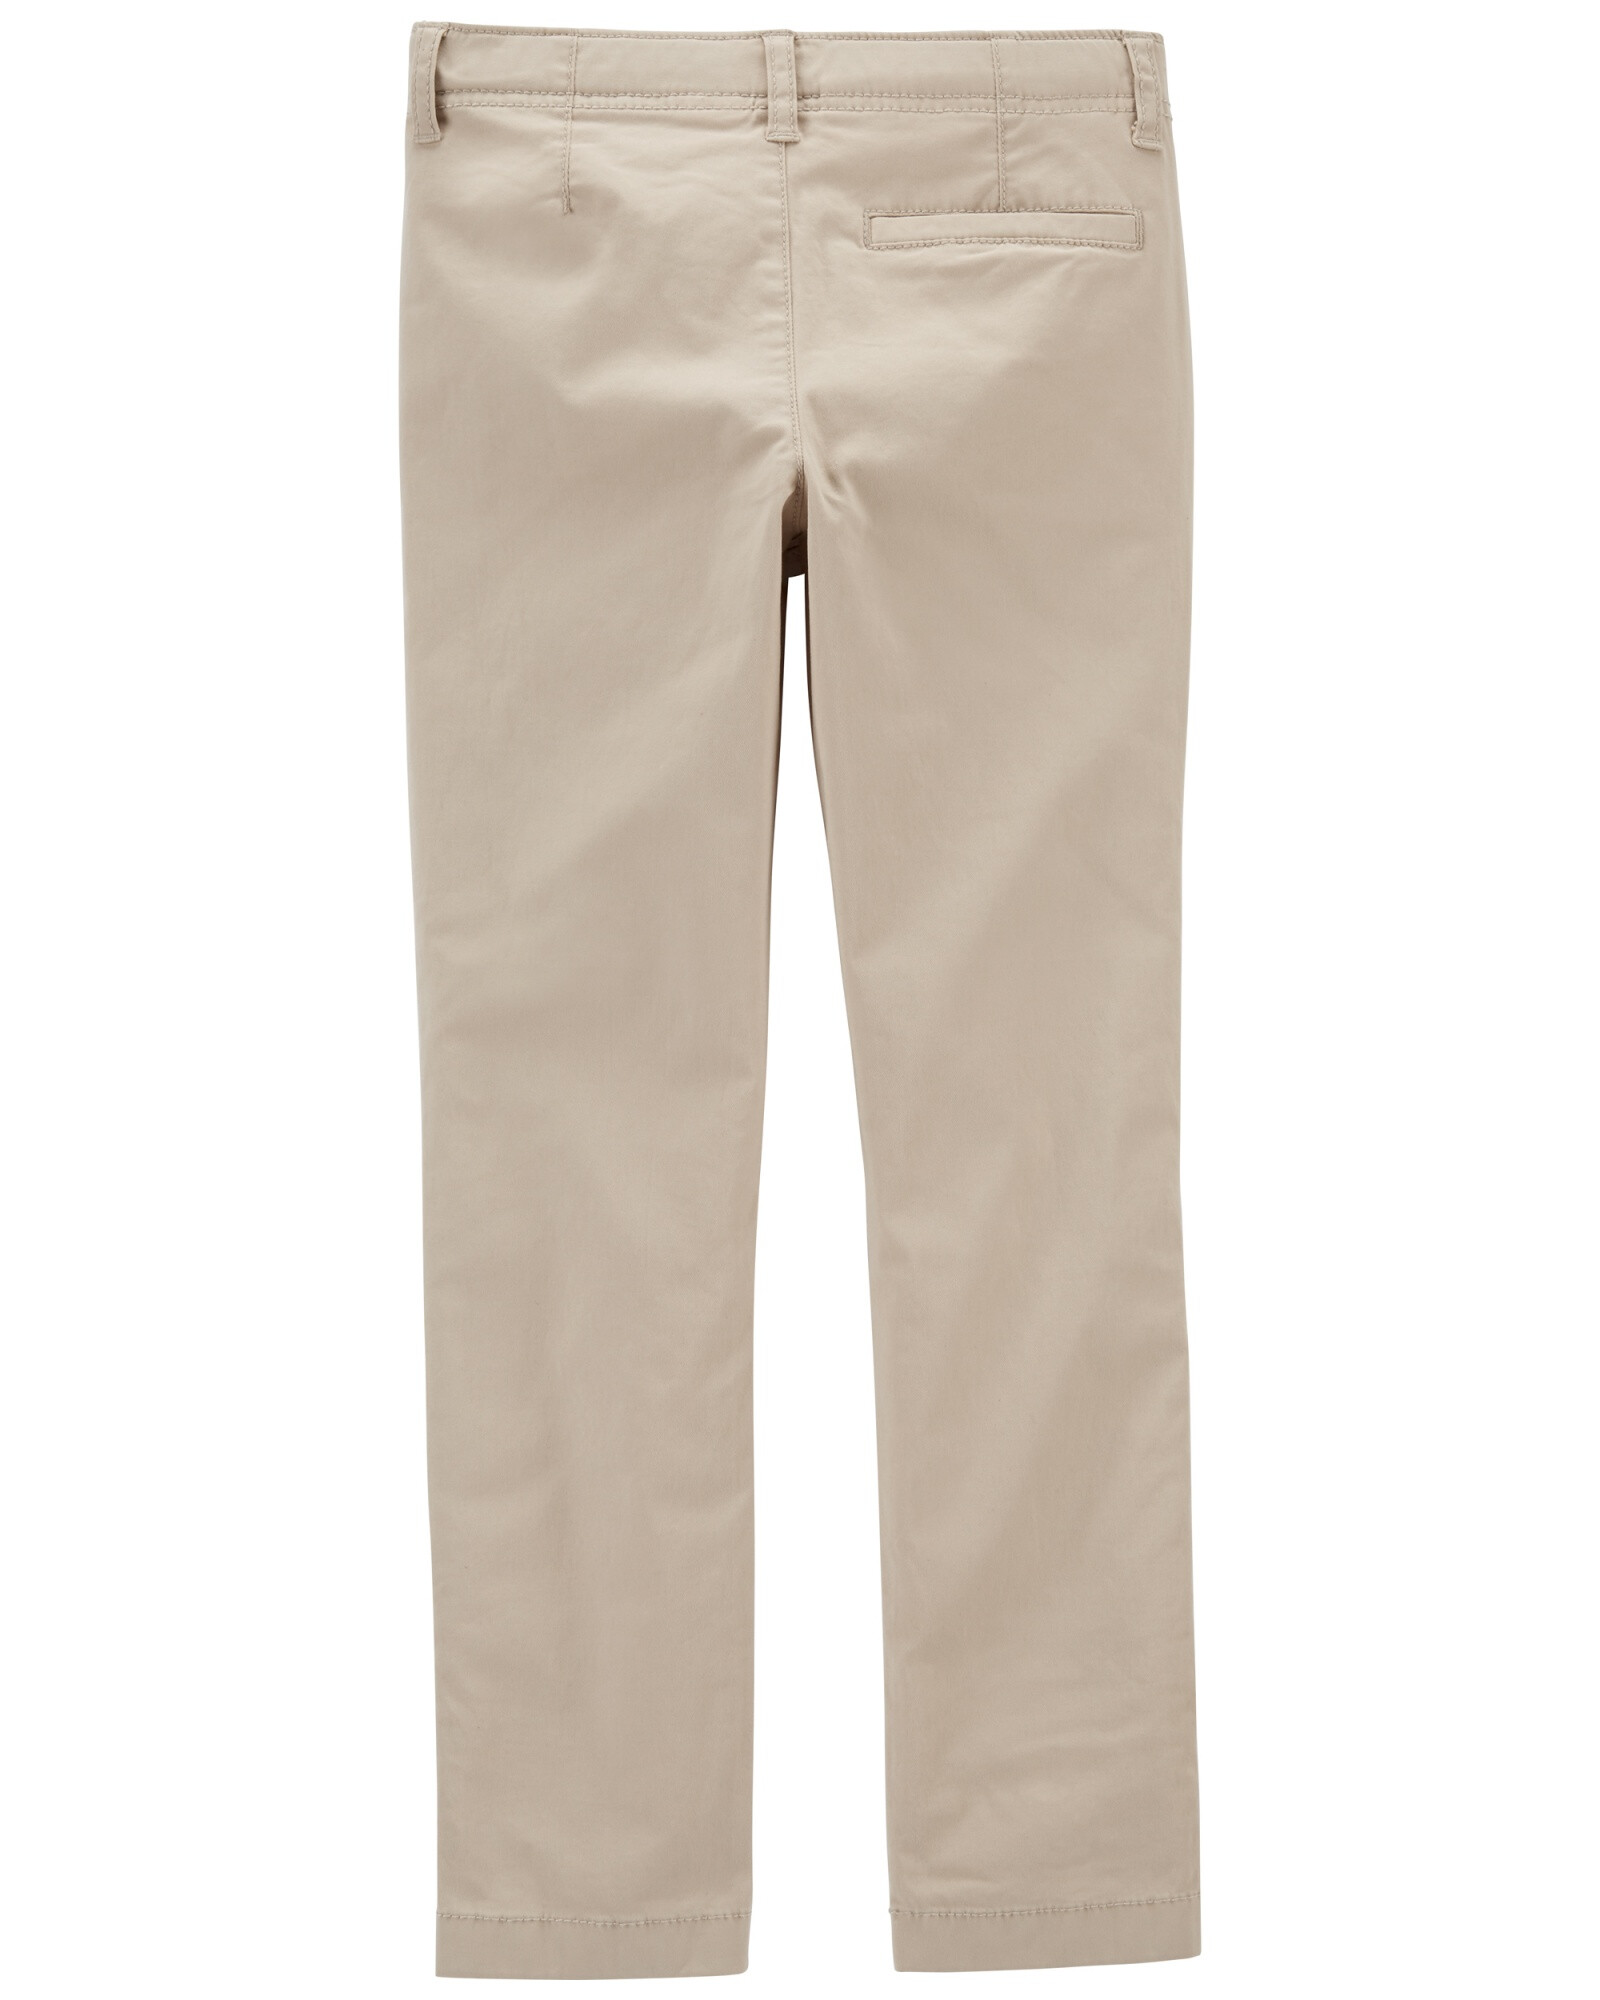 Pantalón de sarga clásico. Talles 6-14 Sin color